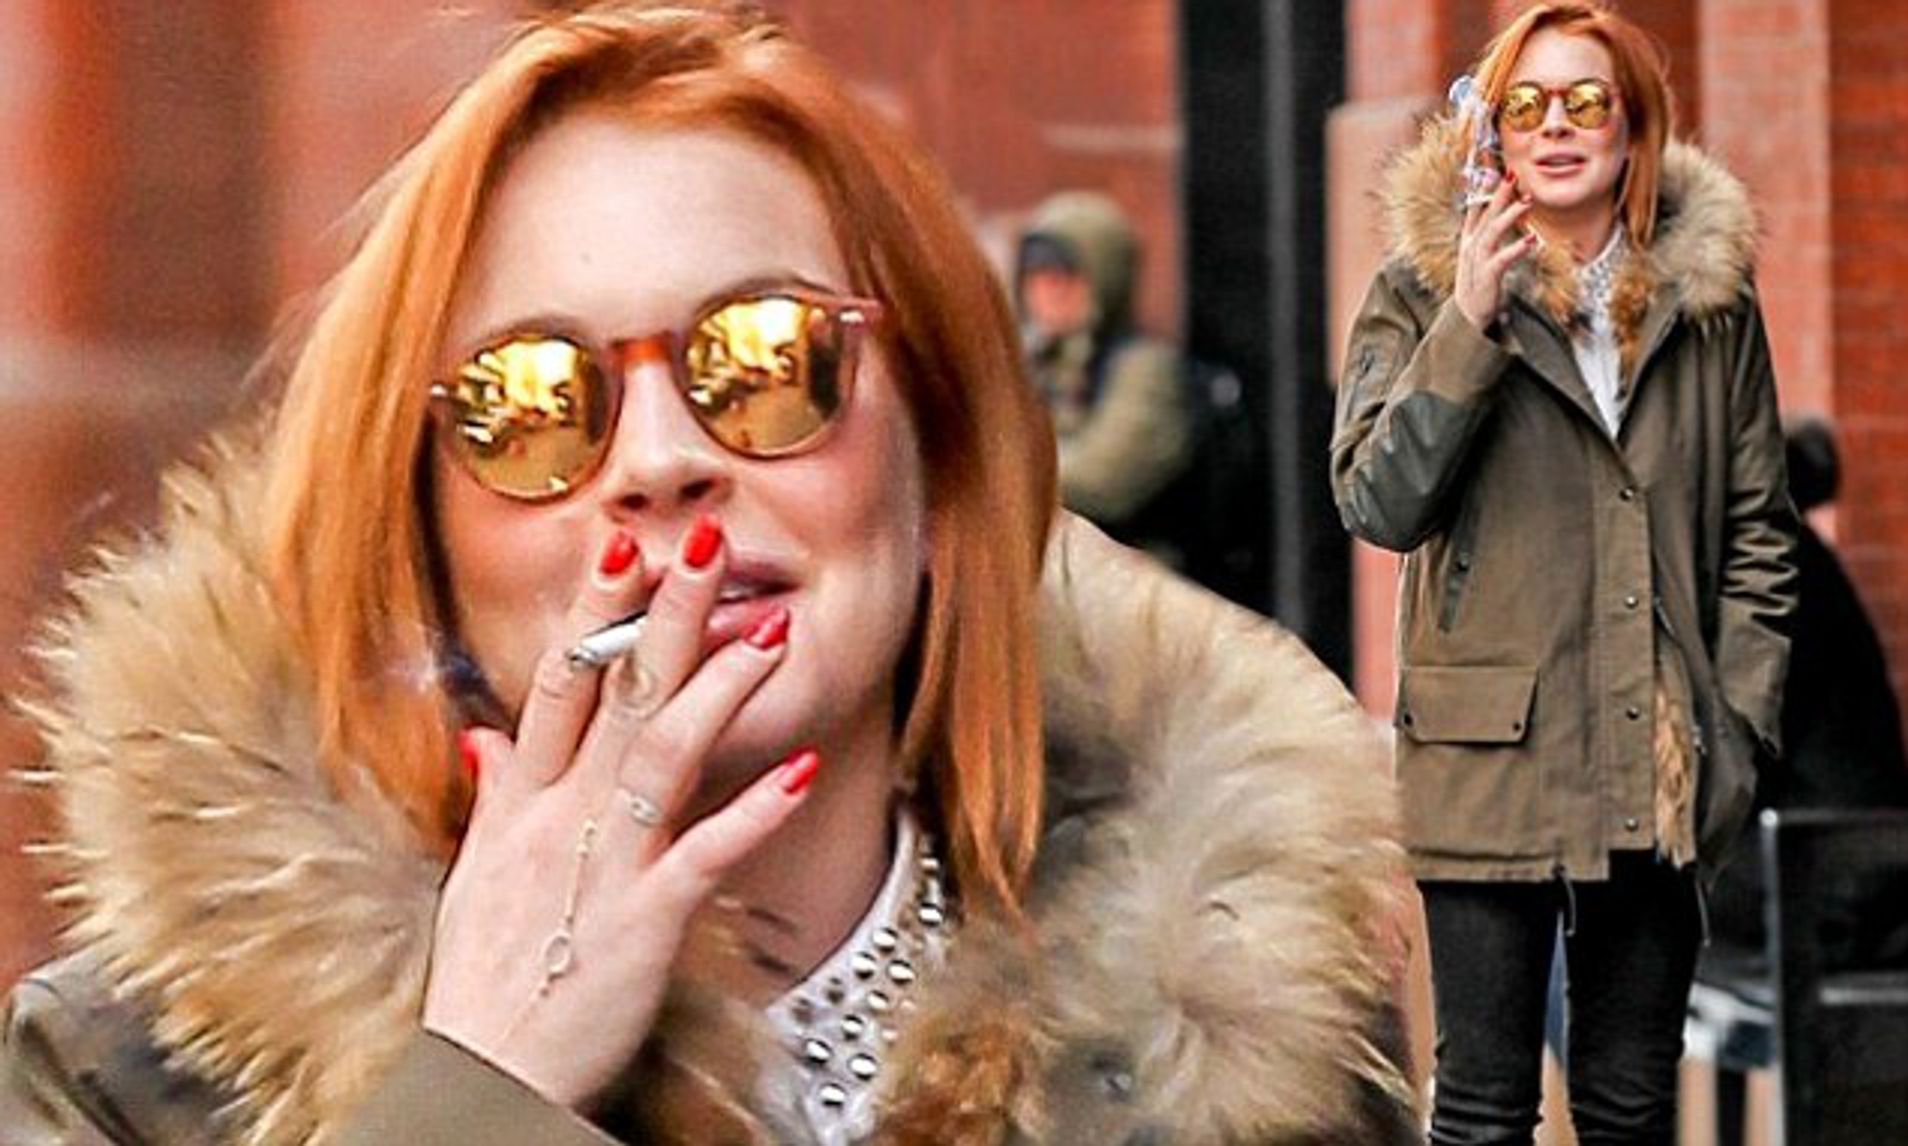 Lindsay Lohan seen smoking.